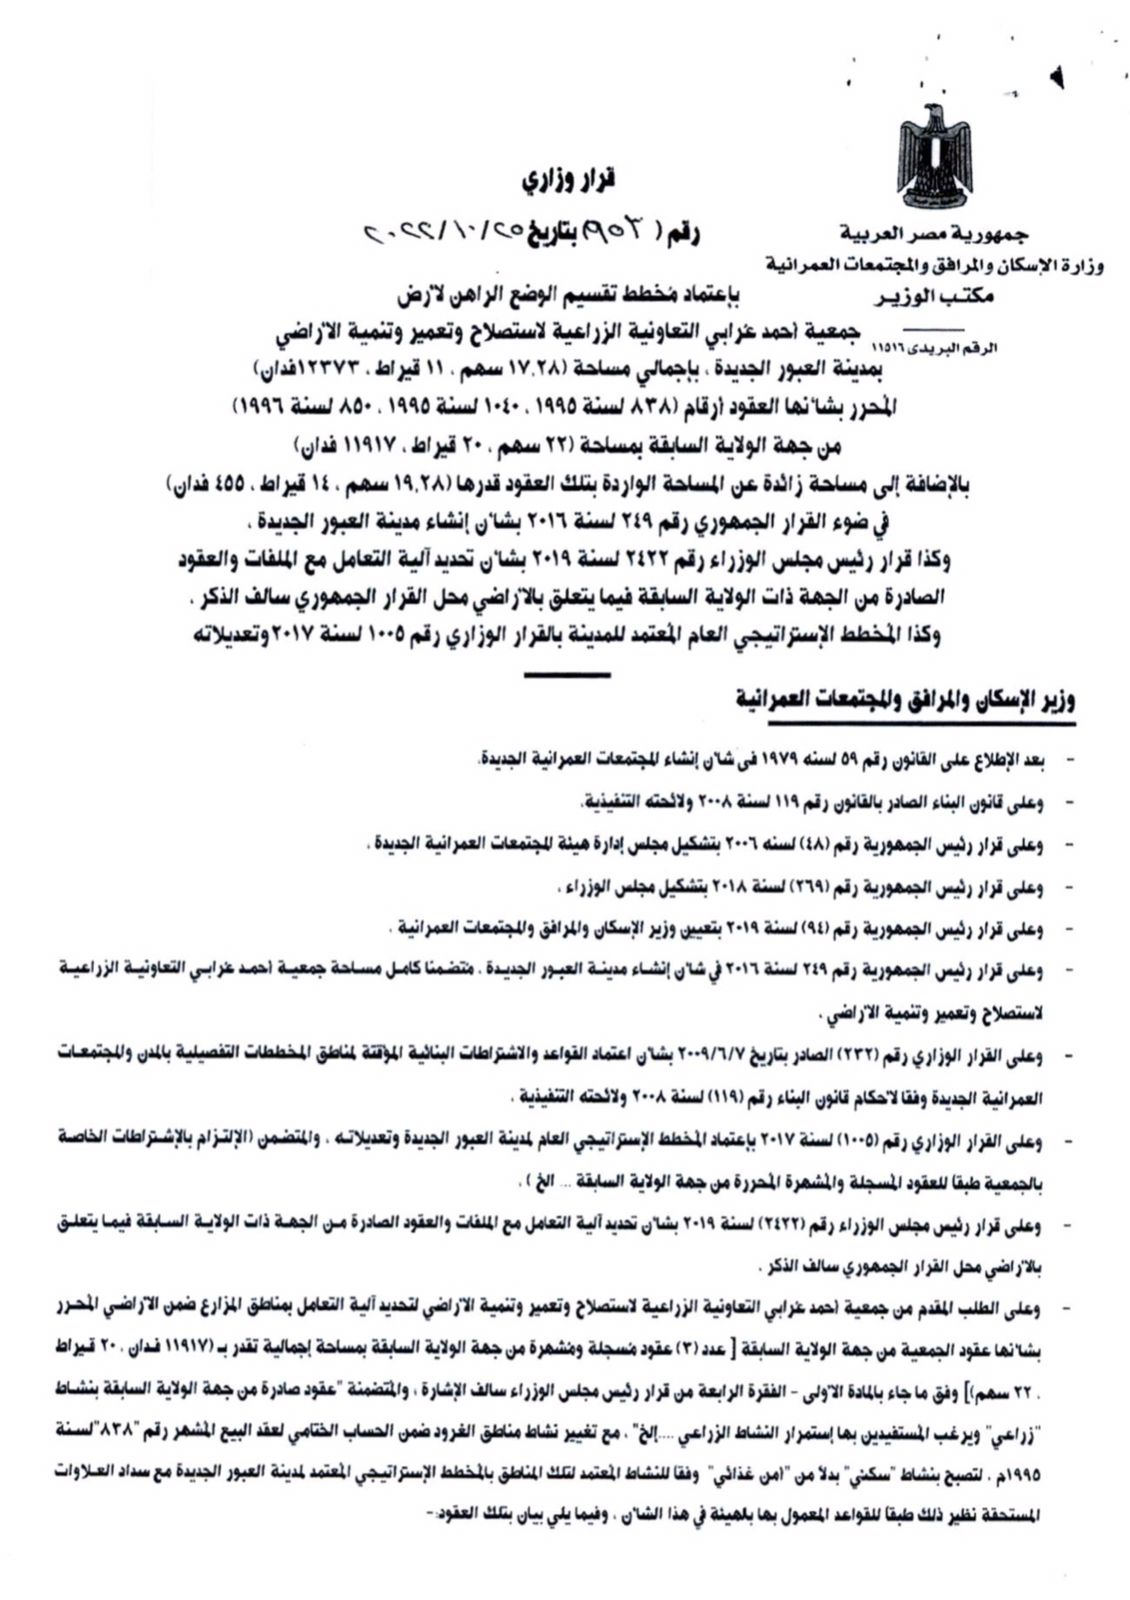 قرار وزاري رقم 953 بإعتماد مخطط تقسيم الوضع الراهن لأرض جمعية احمد عرابي